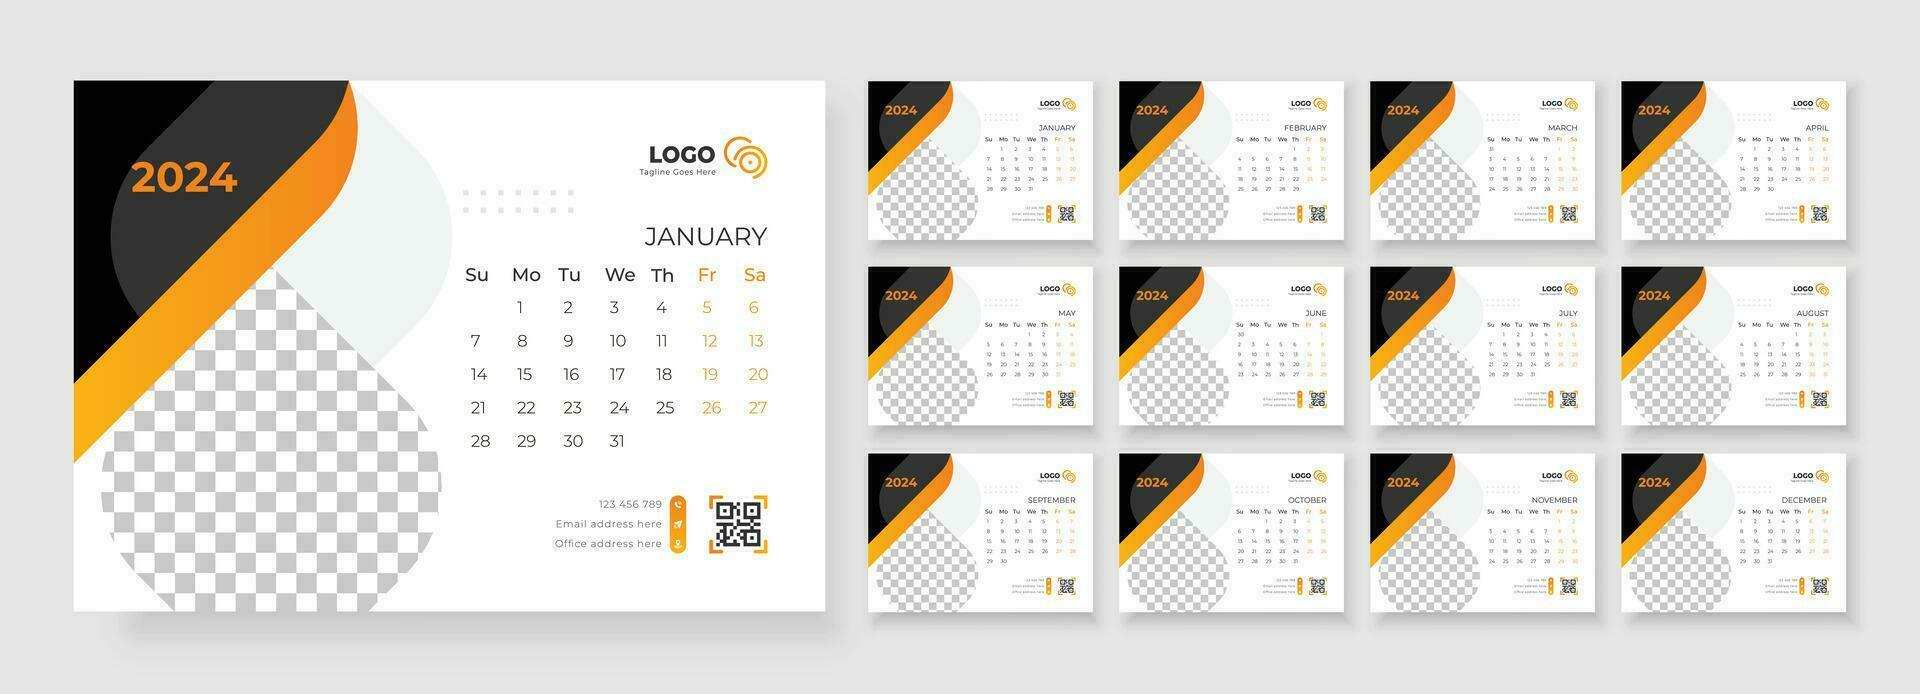 escritorio calendario 2024. modelo para anual calendario 2024. escritorio calendario calendario en un minimalista estilo. vector